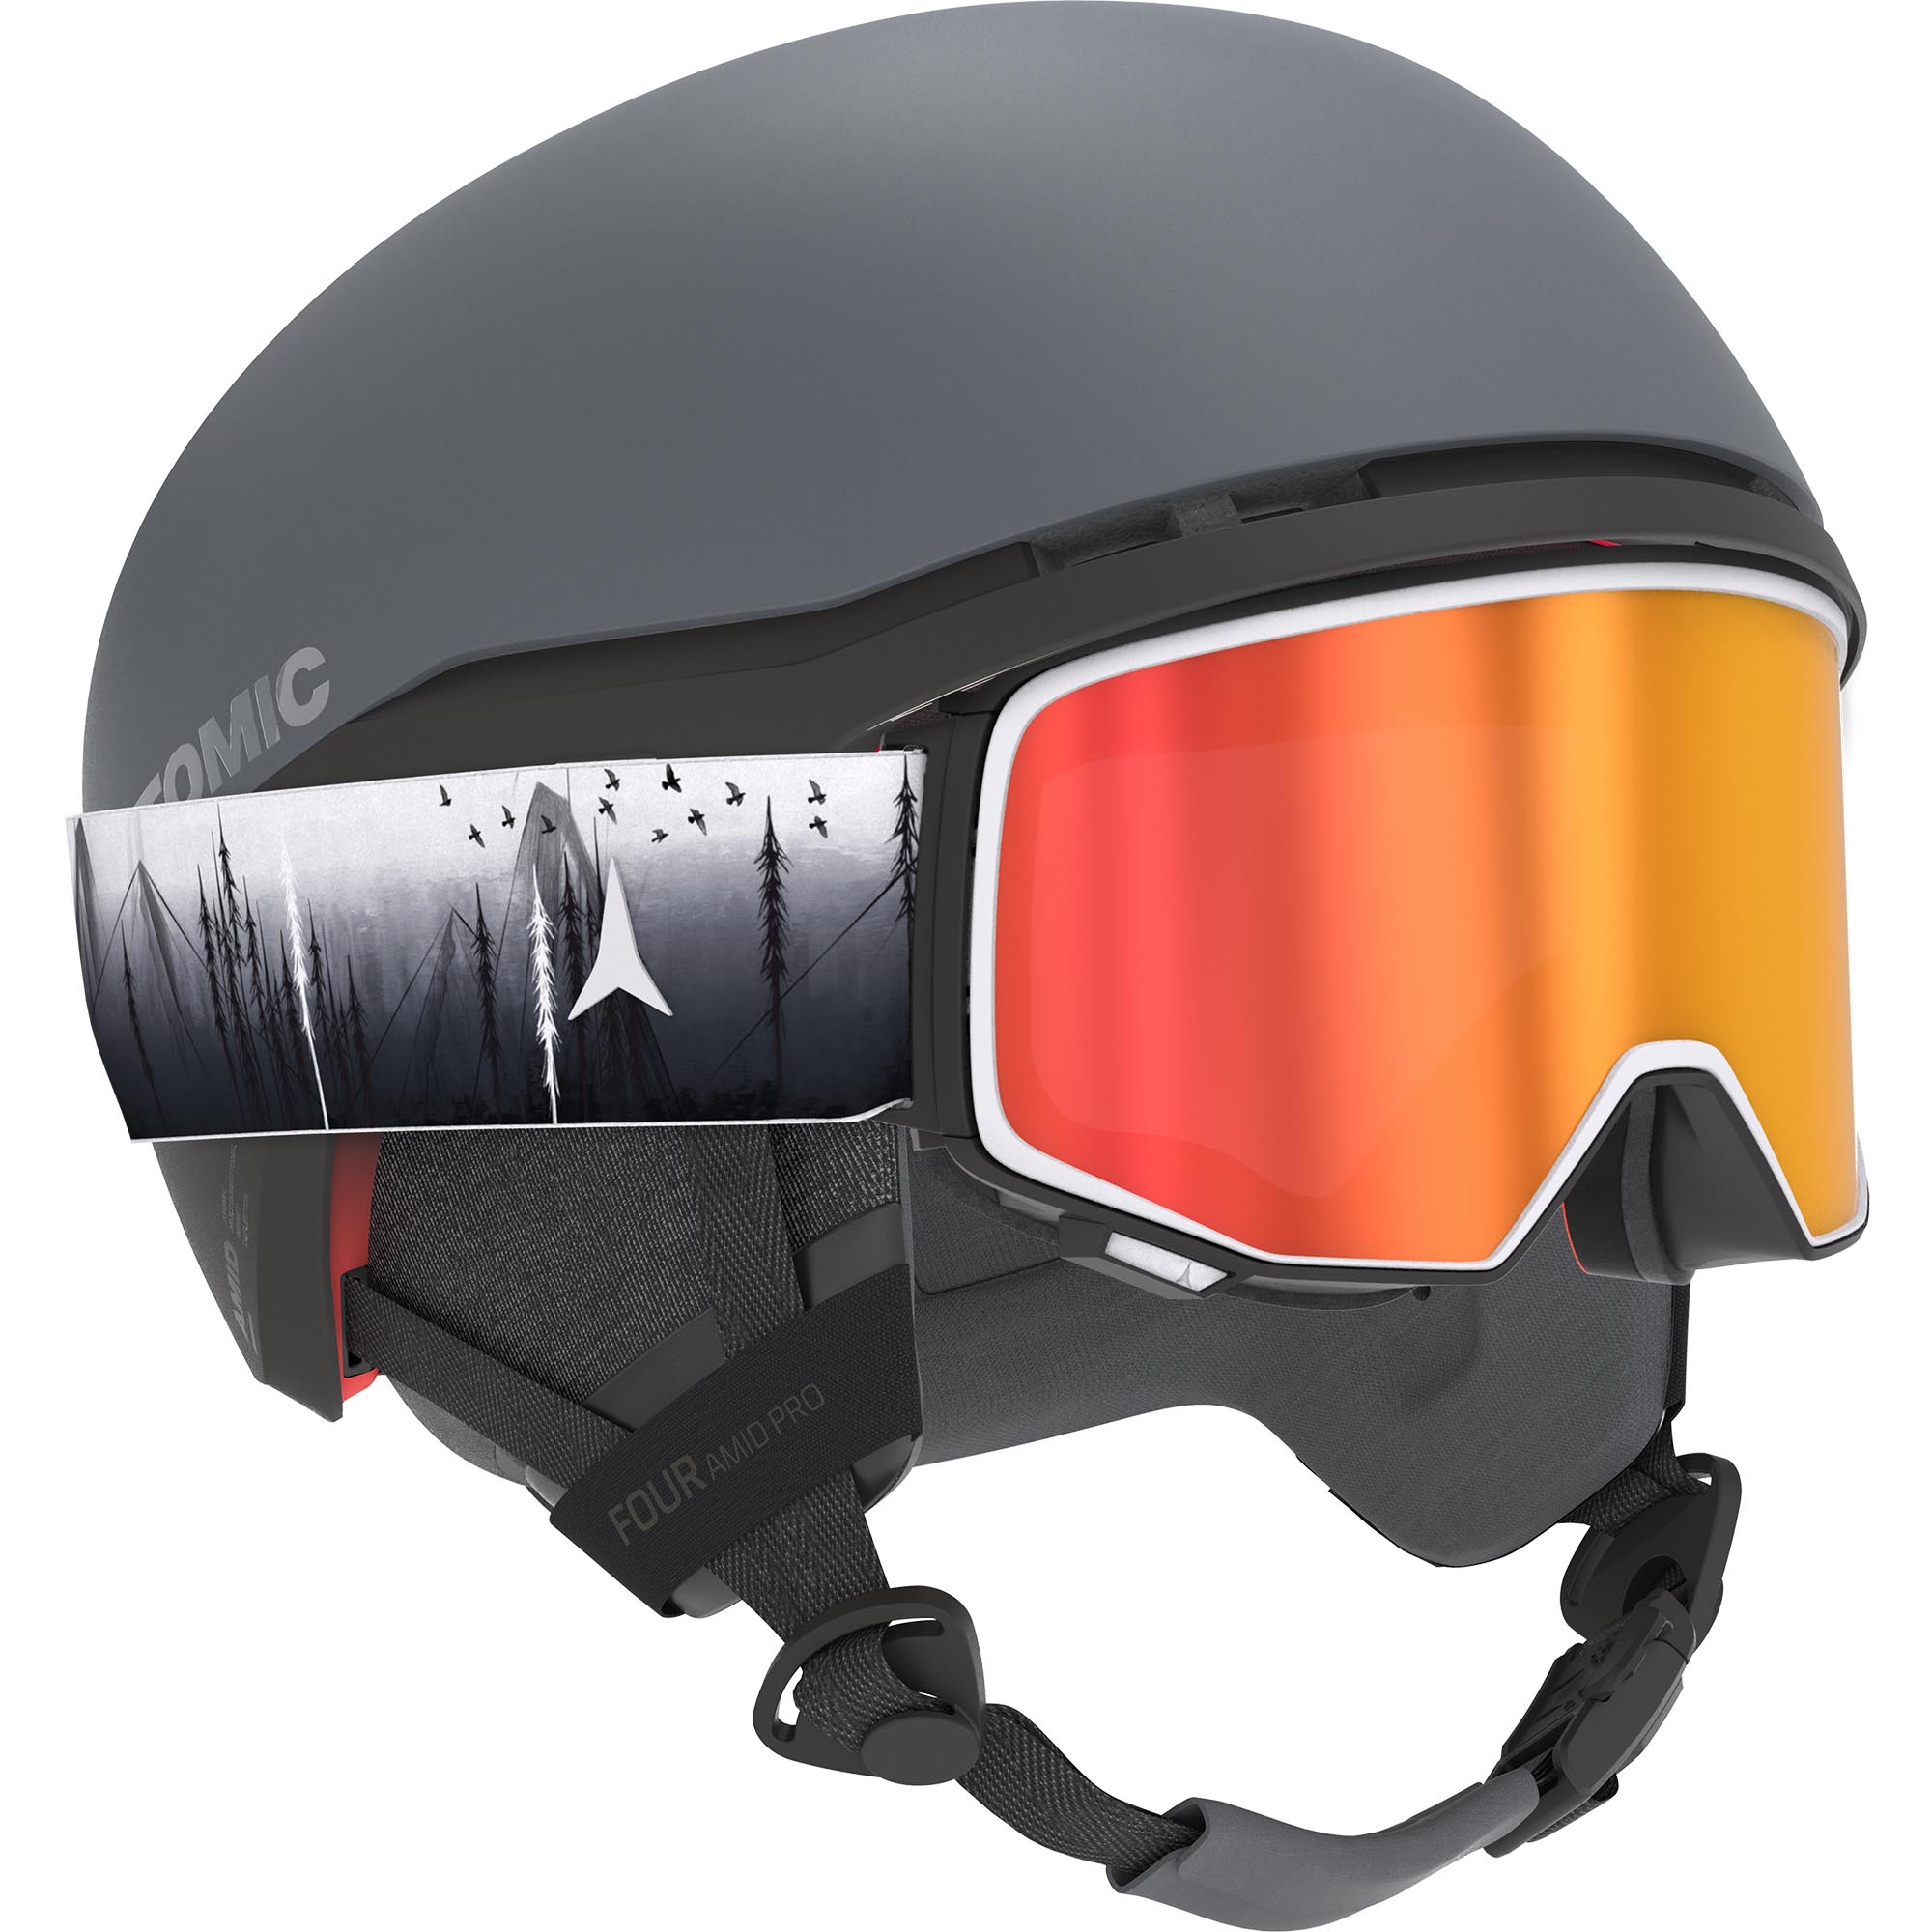 Atomic Four Amid Pro CTD Ski/Snowboard Helmet